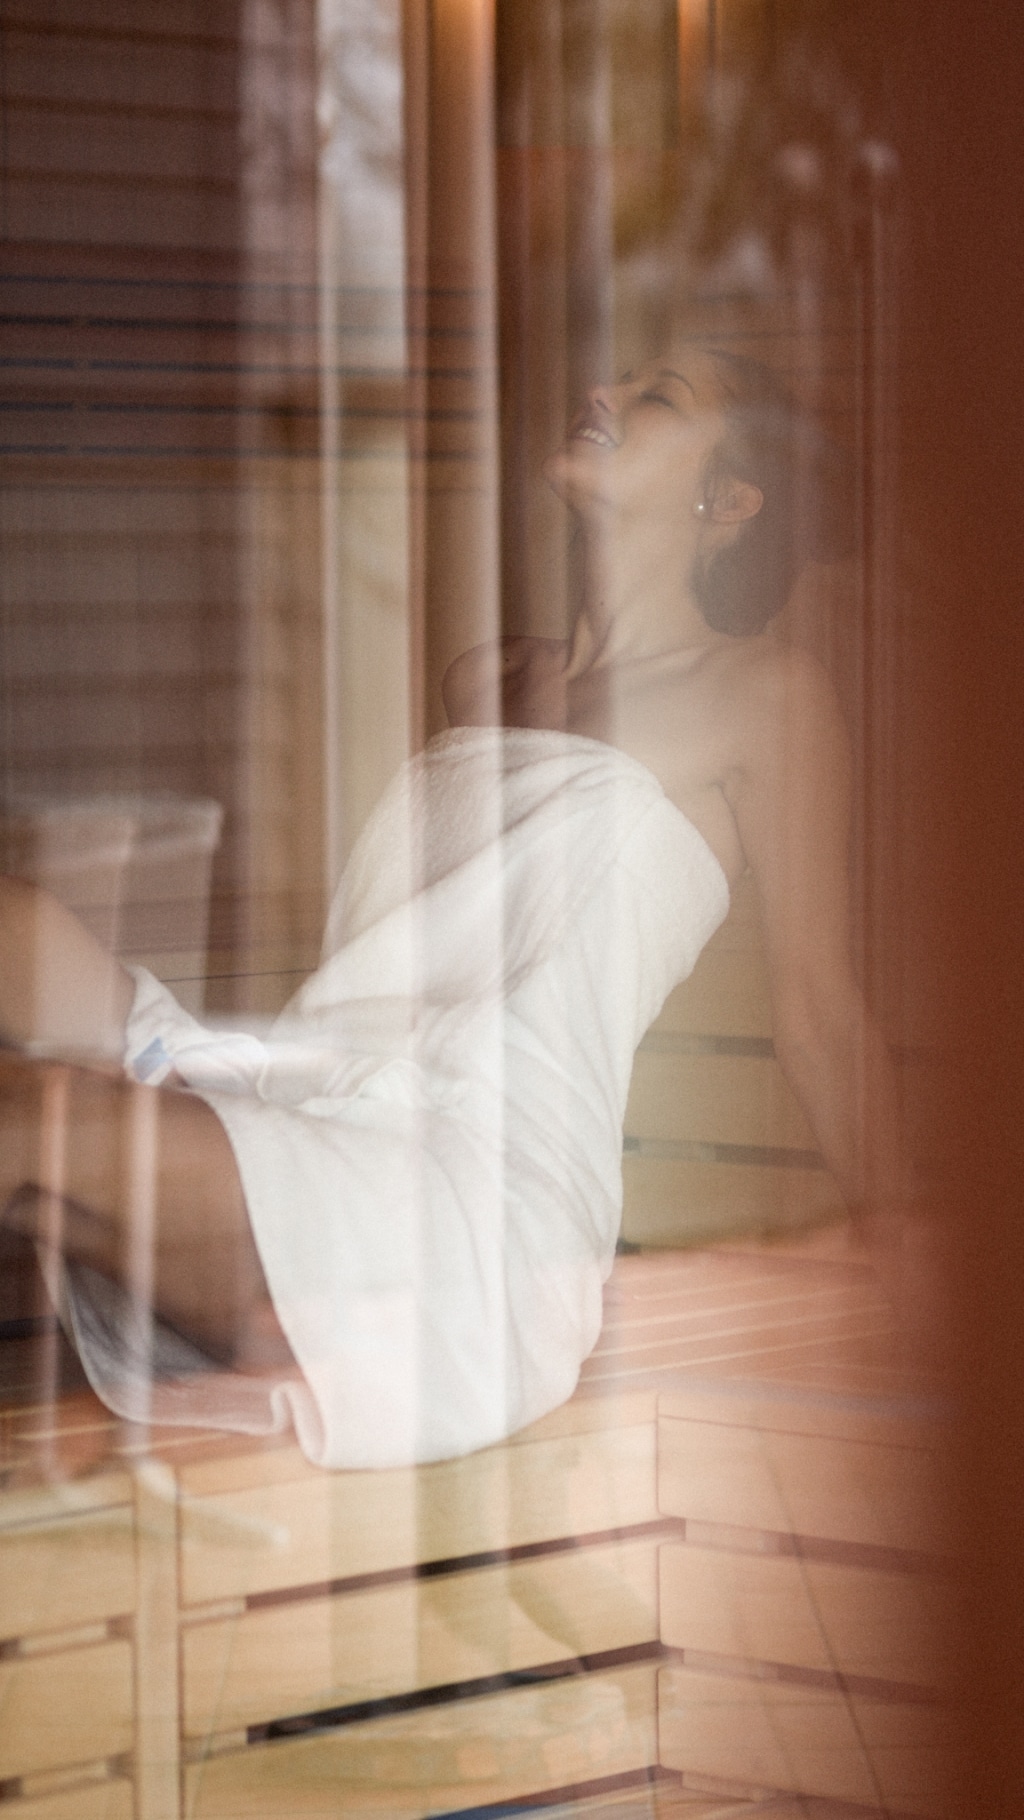 Eine junge Frau sitzt in der Sauna und genießt ihren Aufenthalt sichtlich.